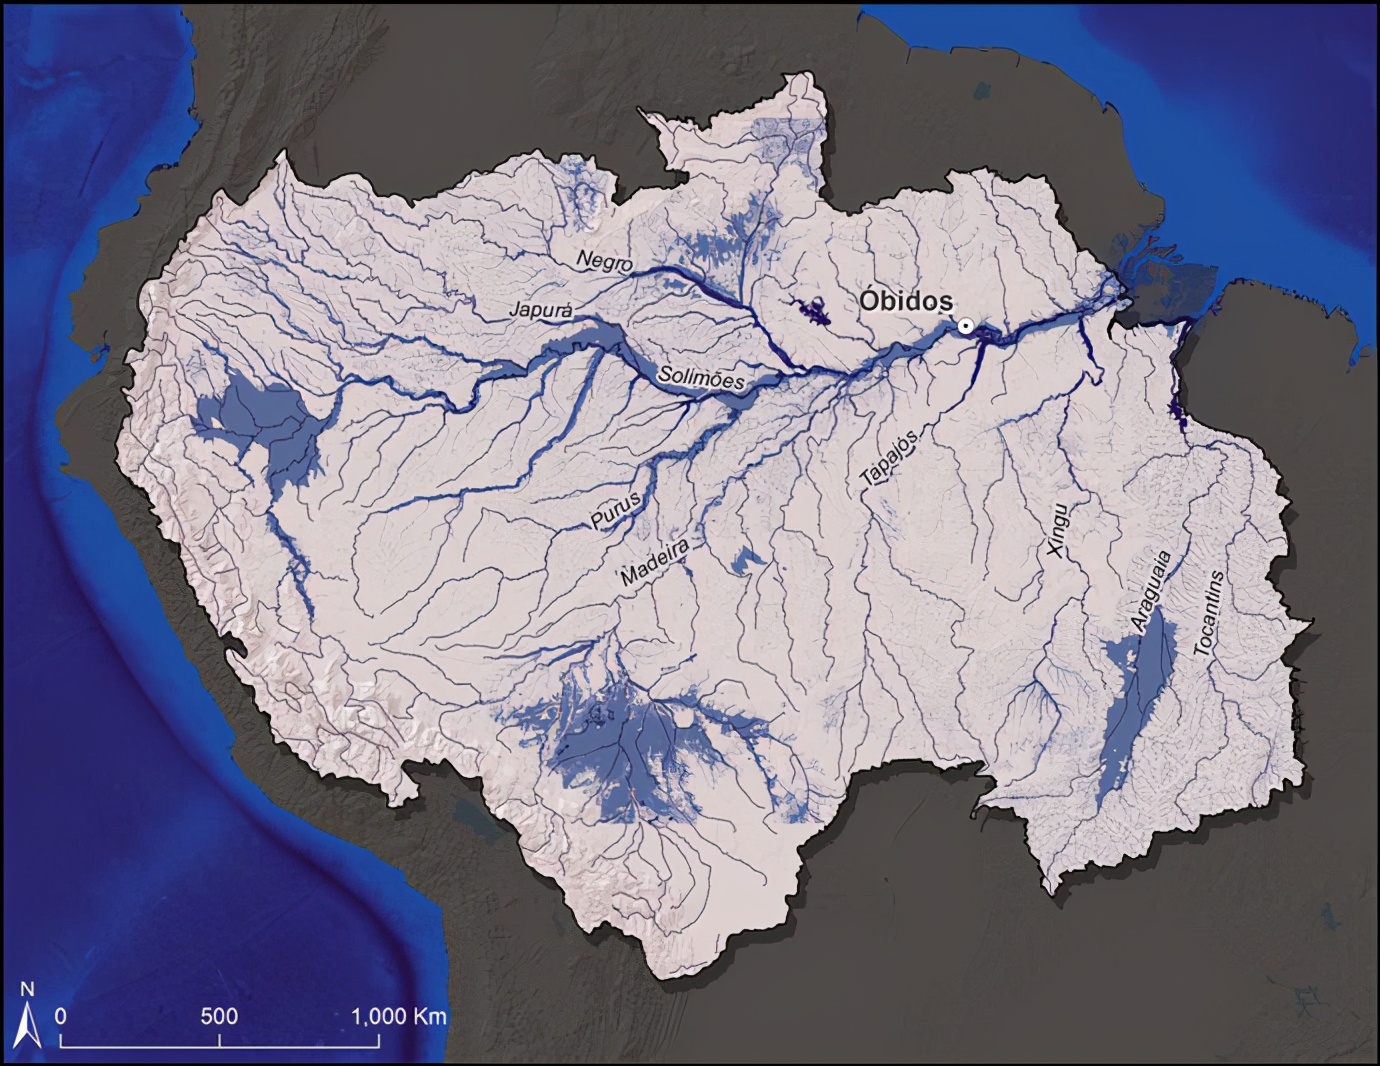 亚马逊河到底有多可怕？为什么连当地人都不敢在里面游泳？